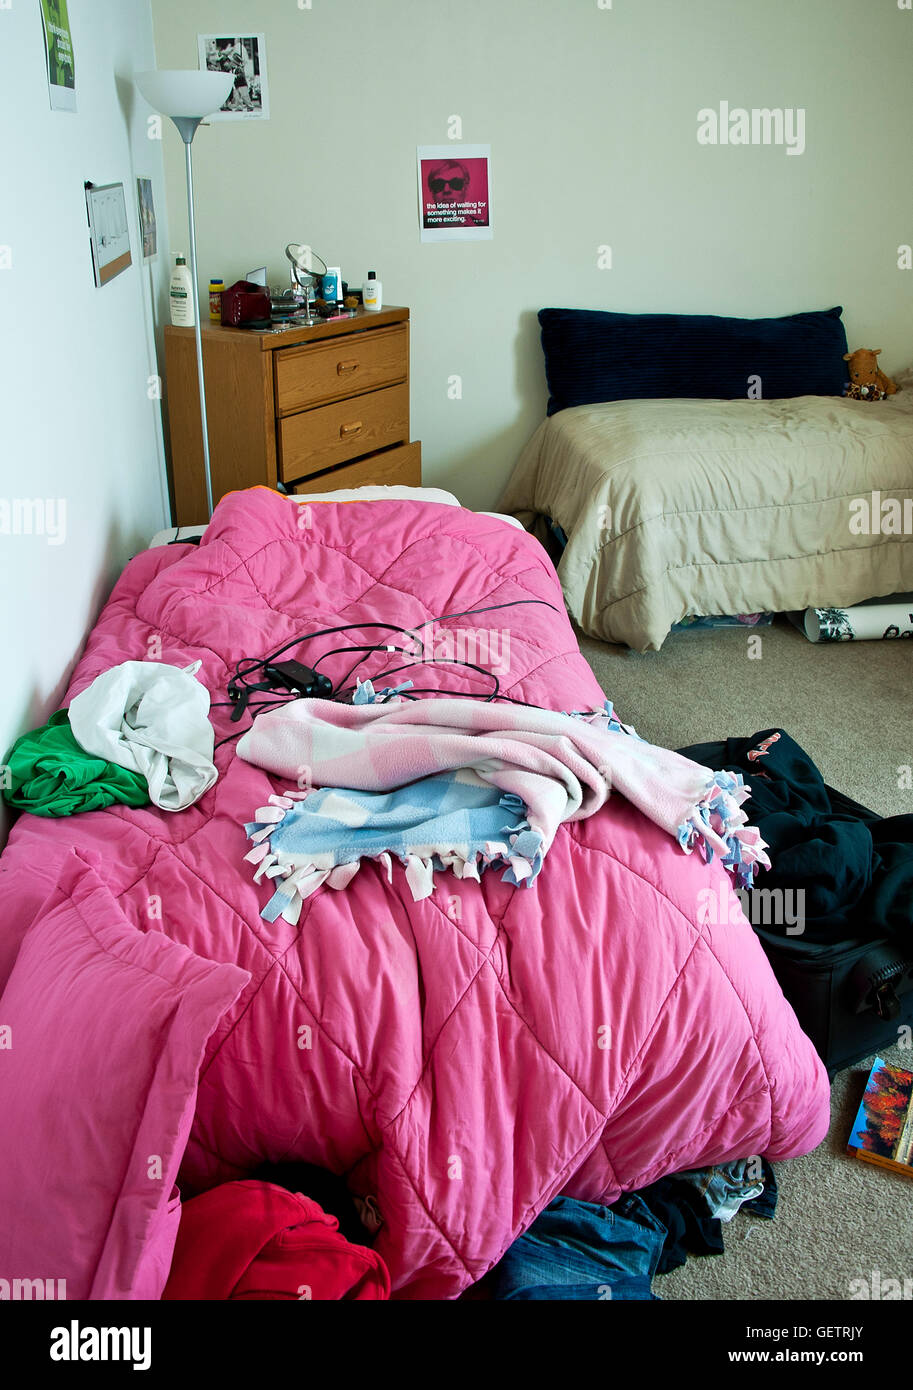 Messy college dorm room. Stock Photo